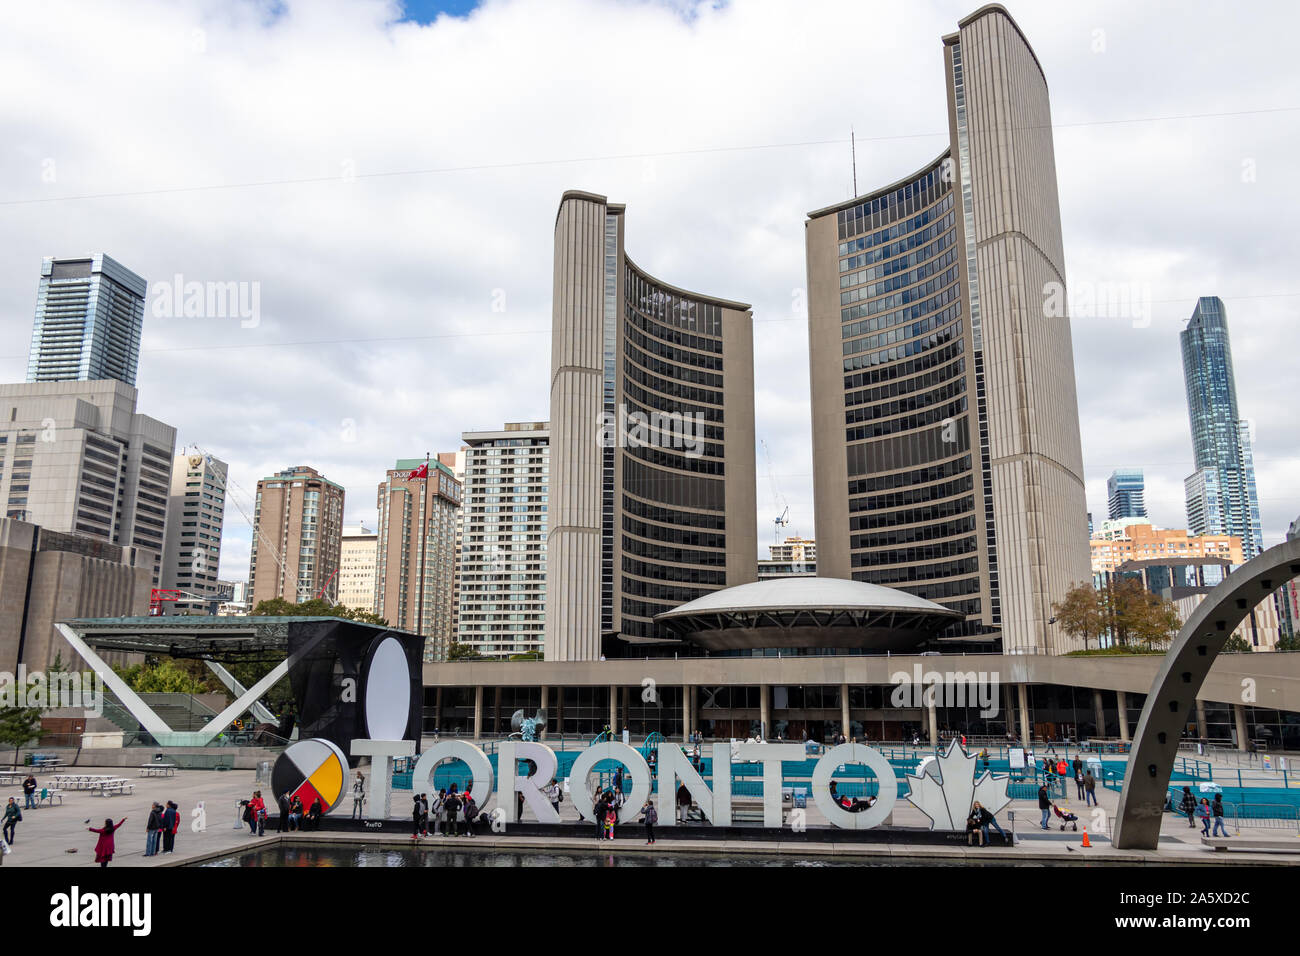 L'hôtel de ville de Toronto et Toronto signent Nathan Philips Square tandis que les touristes se mêlent autour d'un après-midi animé. Banque D'Images